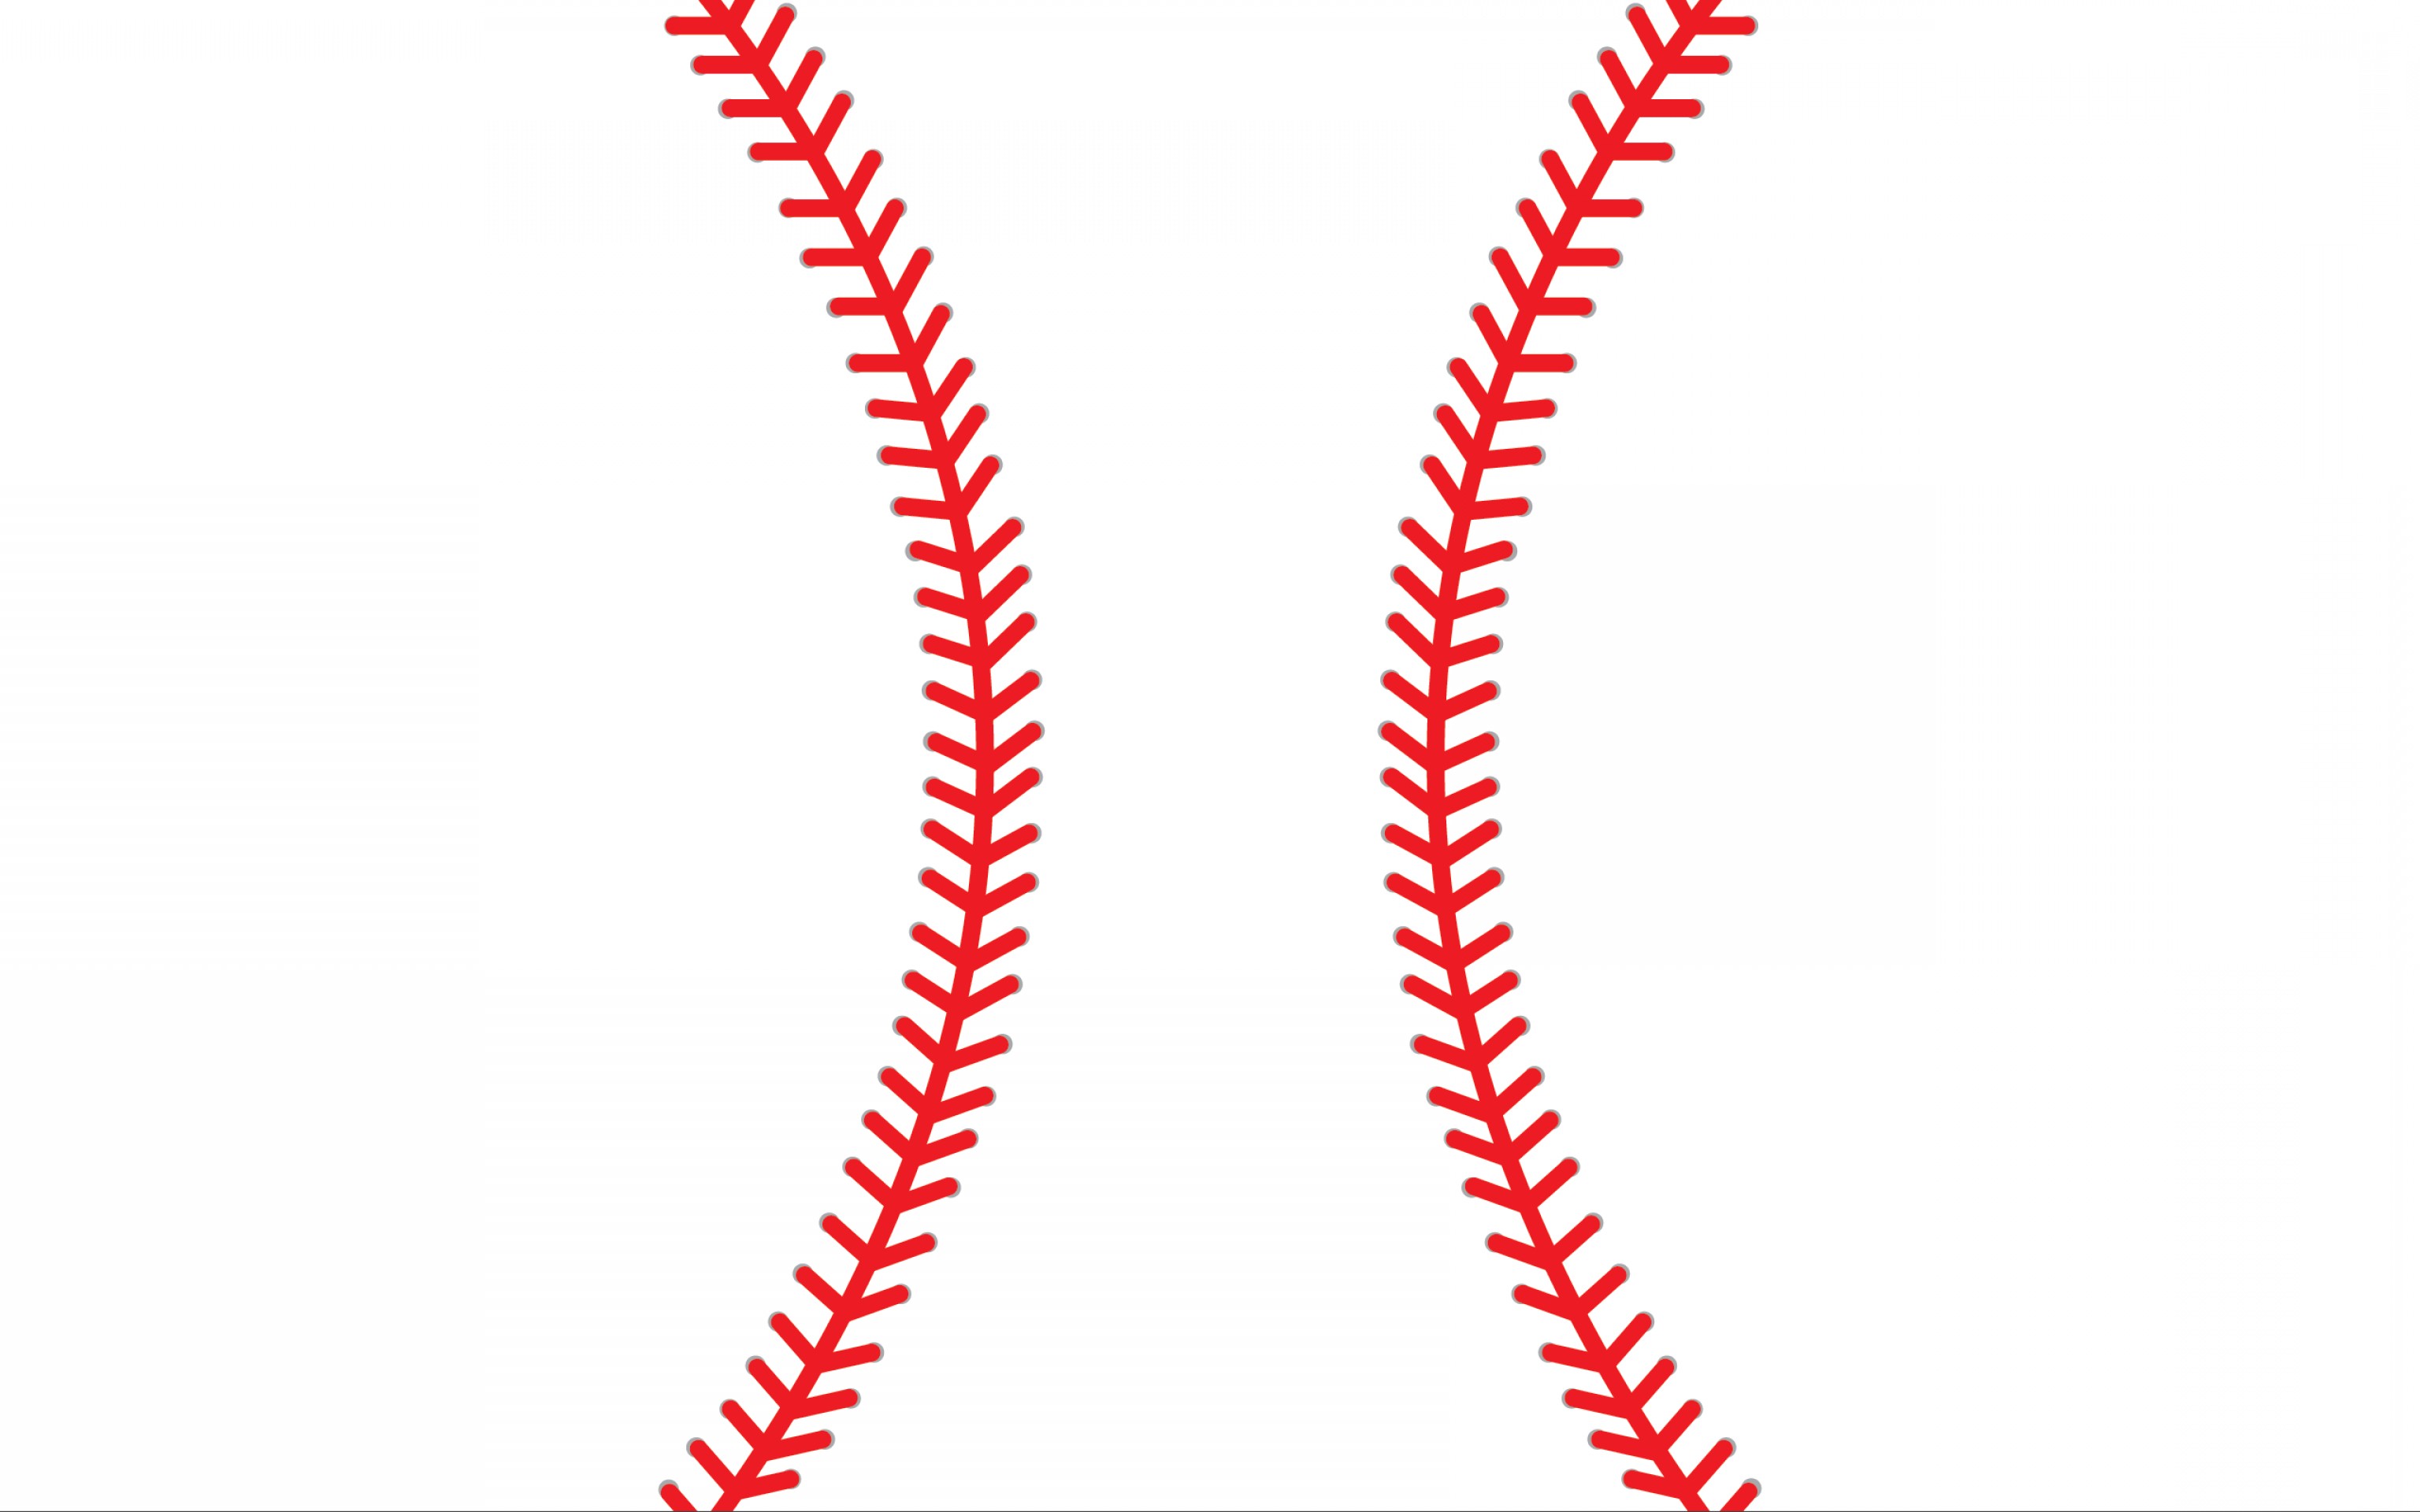 Baseball stitches clipart.